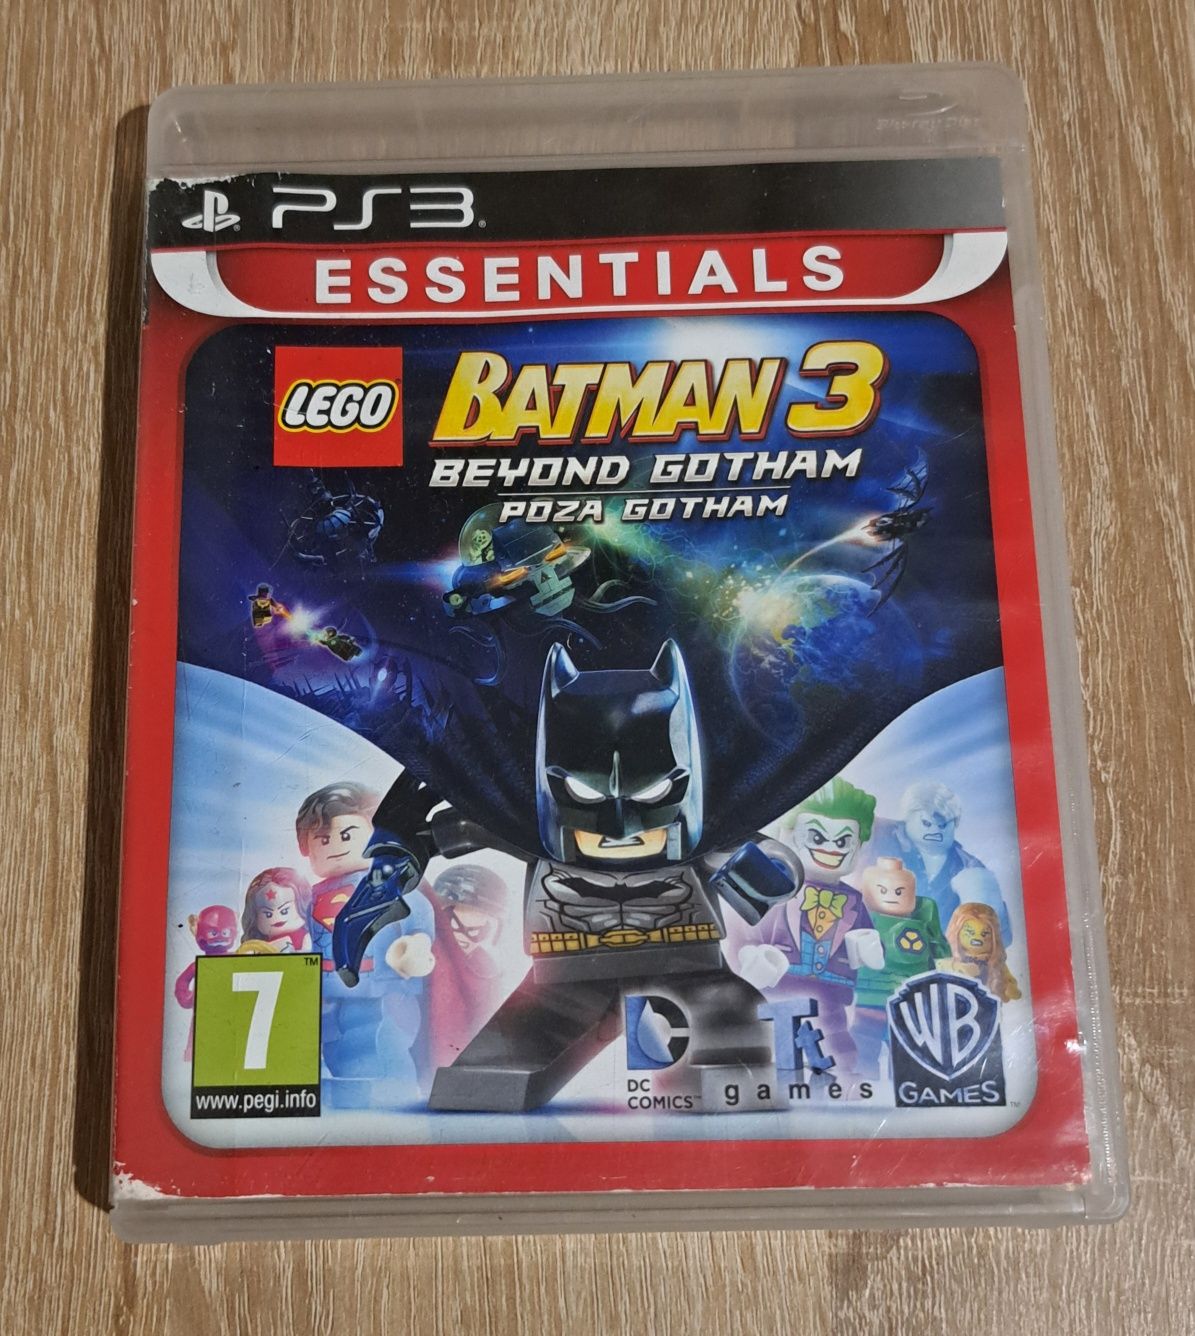 Lego Batman 3 Poza Gotham Beyond Gotham Ps3 PL Polska Wersja Po Polsku